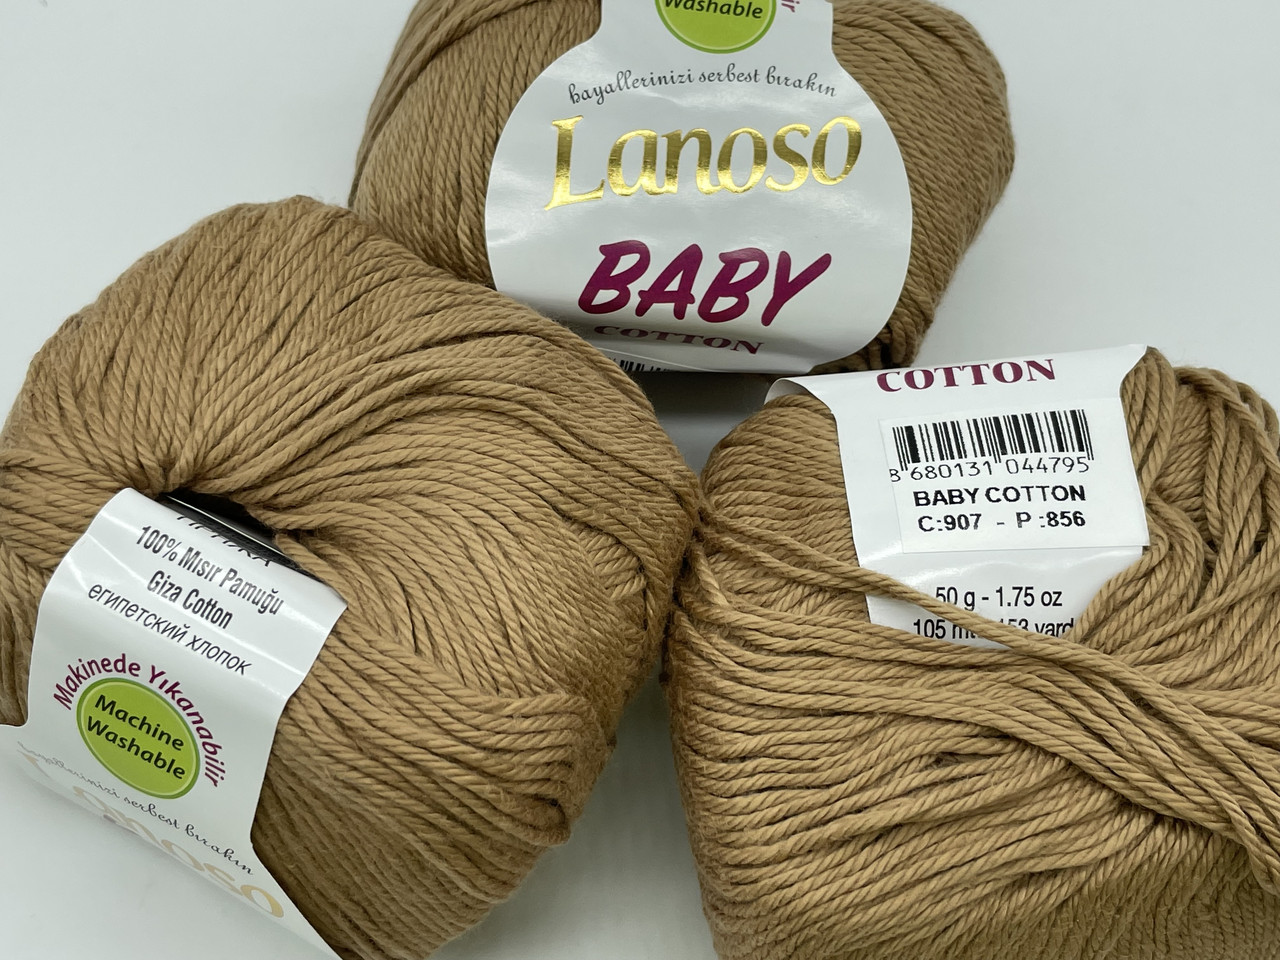 Пряжа Baby cotton lanoso-907